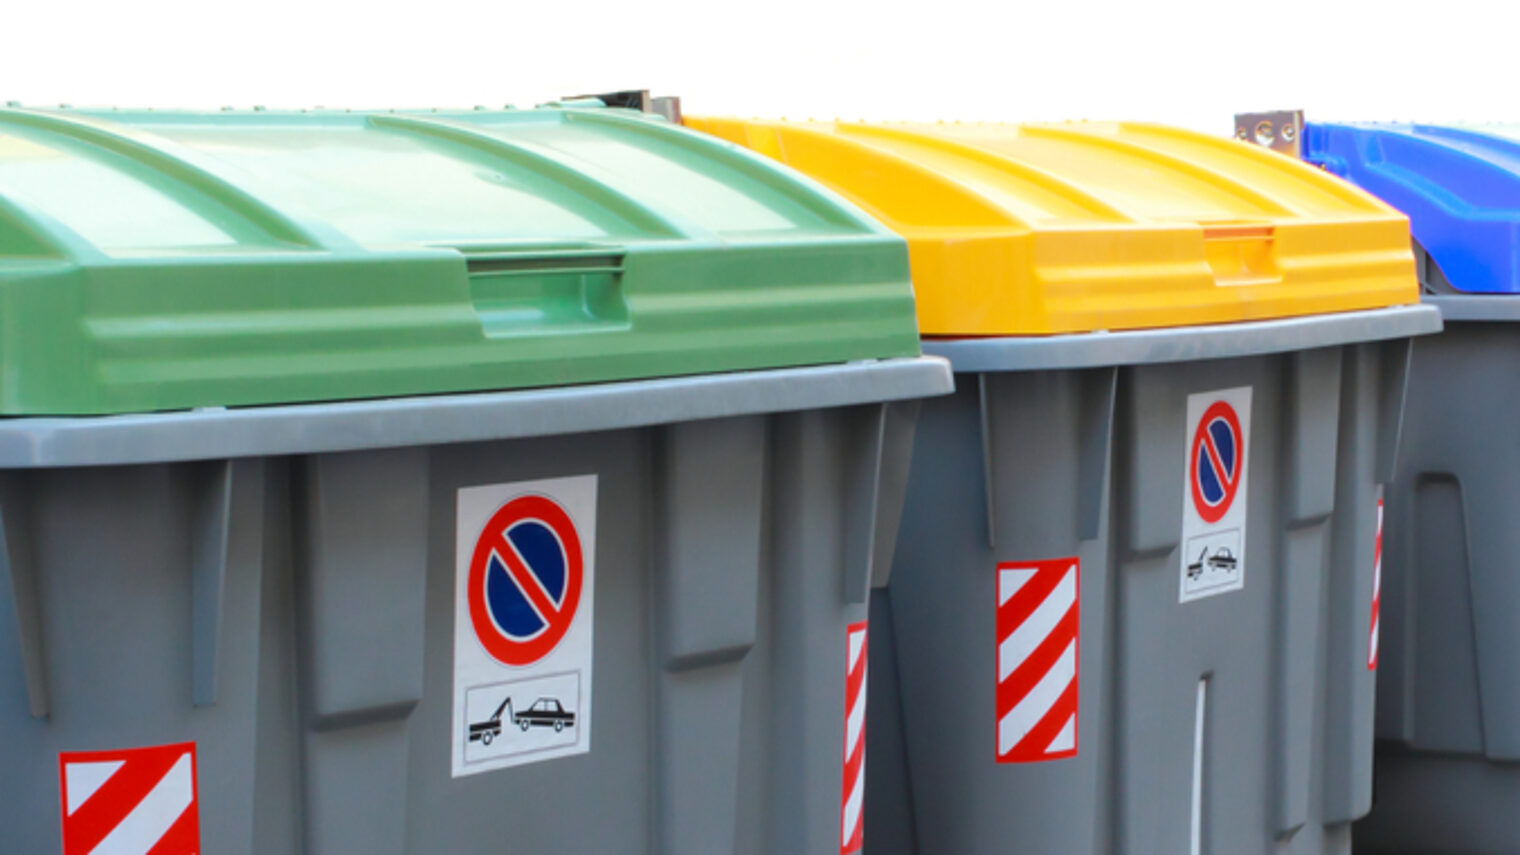 Mehrere große Recycling Müllcontainer mit grünen, gelben und blauen Deckel